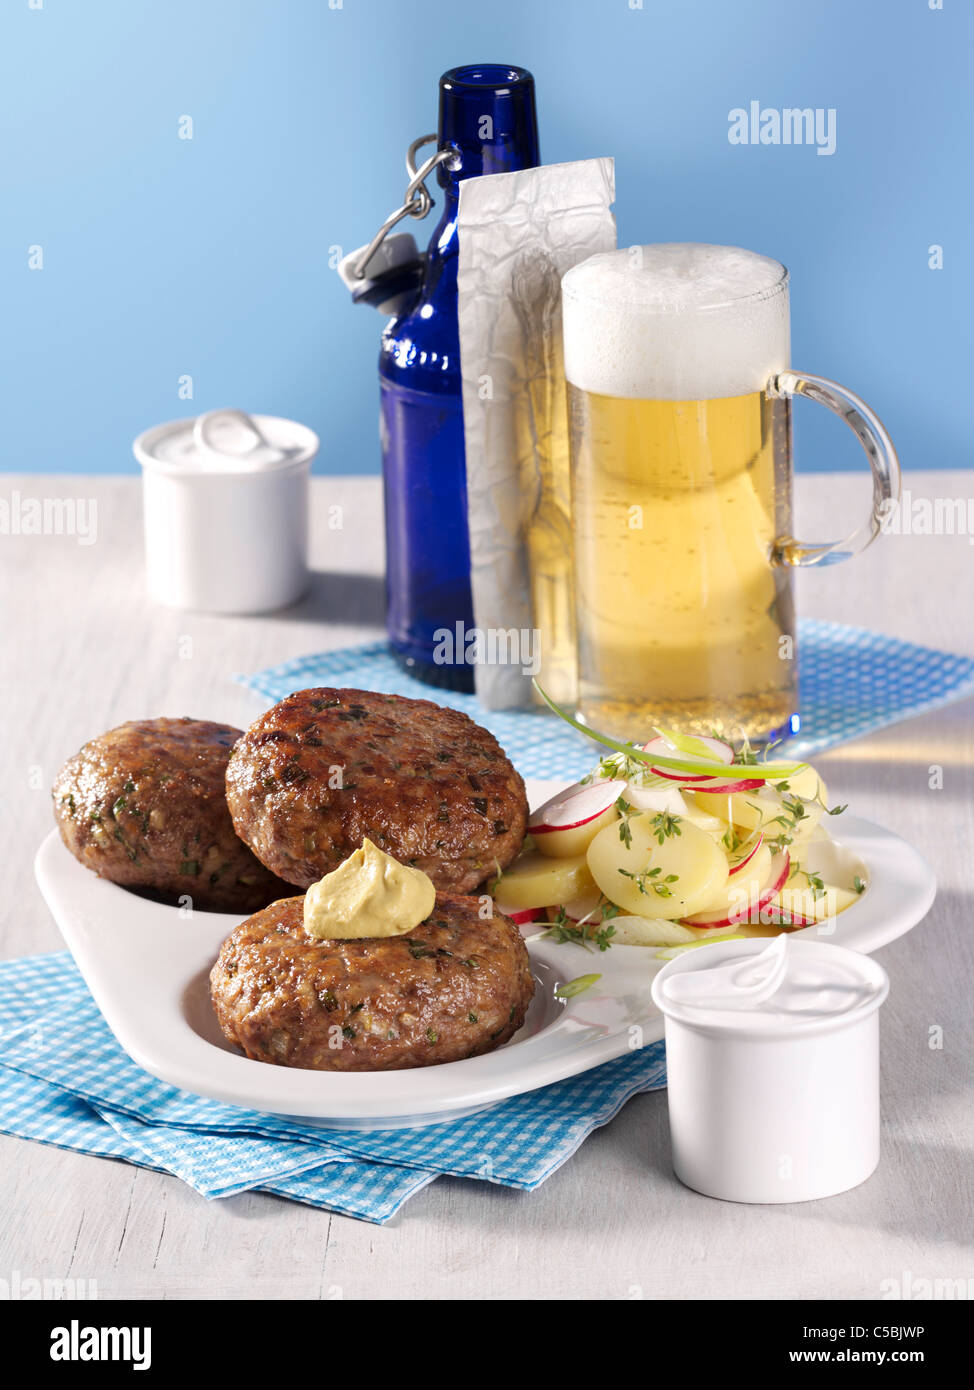 Frikadellen mit Bier und Kartoffelsalat Stockfotografie - Alamy